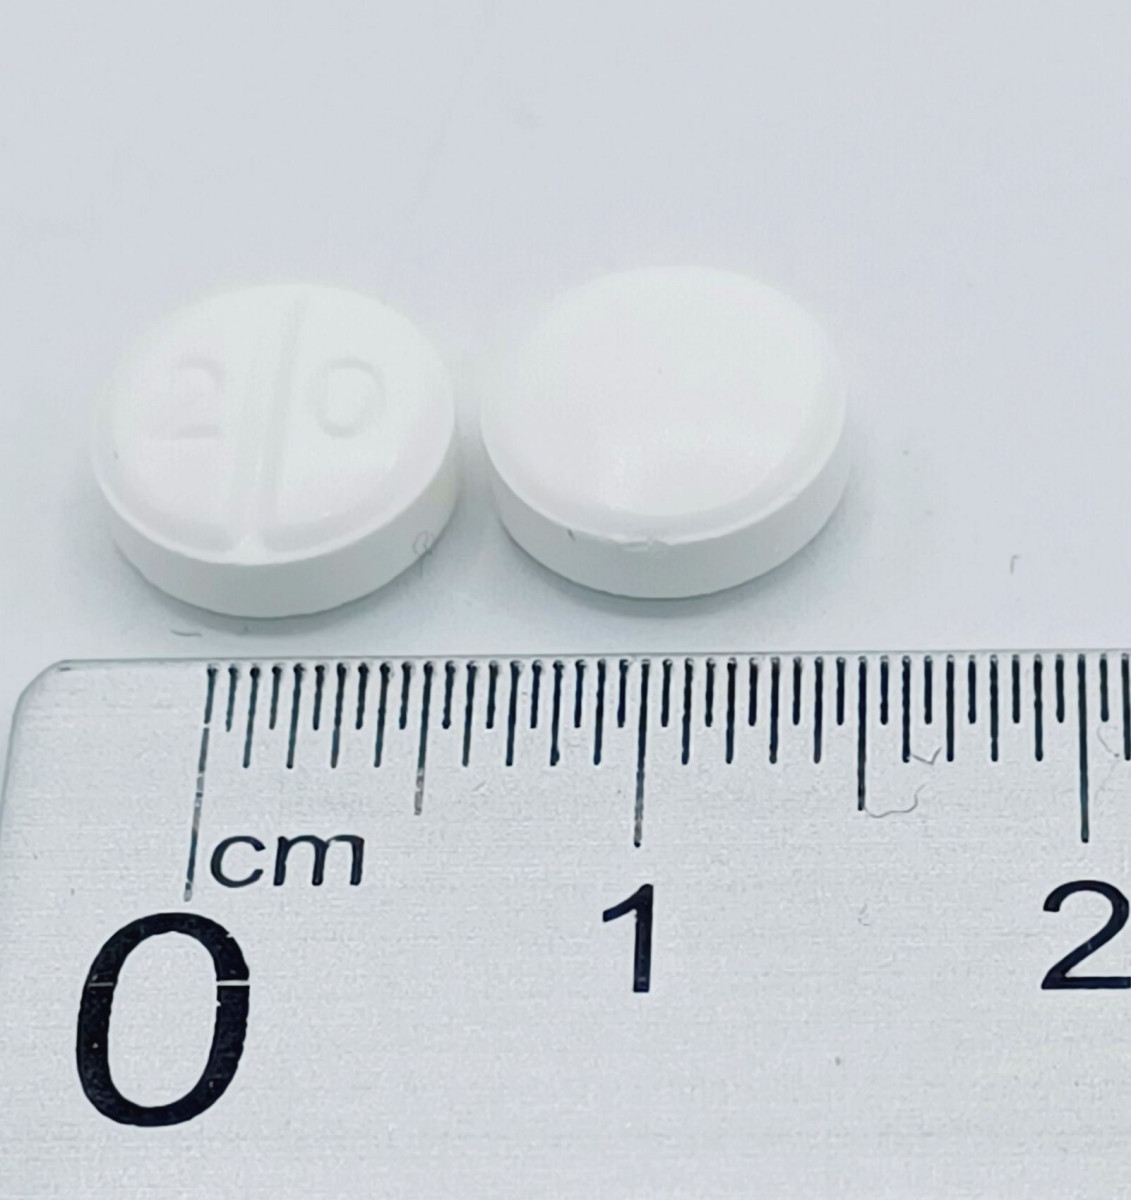 ARIPIPRAZOL NORMON 20 MG COMPRIMIDOS, 28 comprimidos fotografía de la forma farmacéutica.